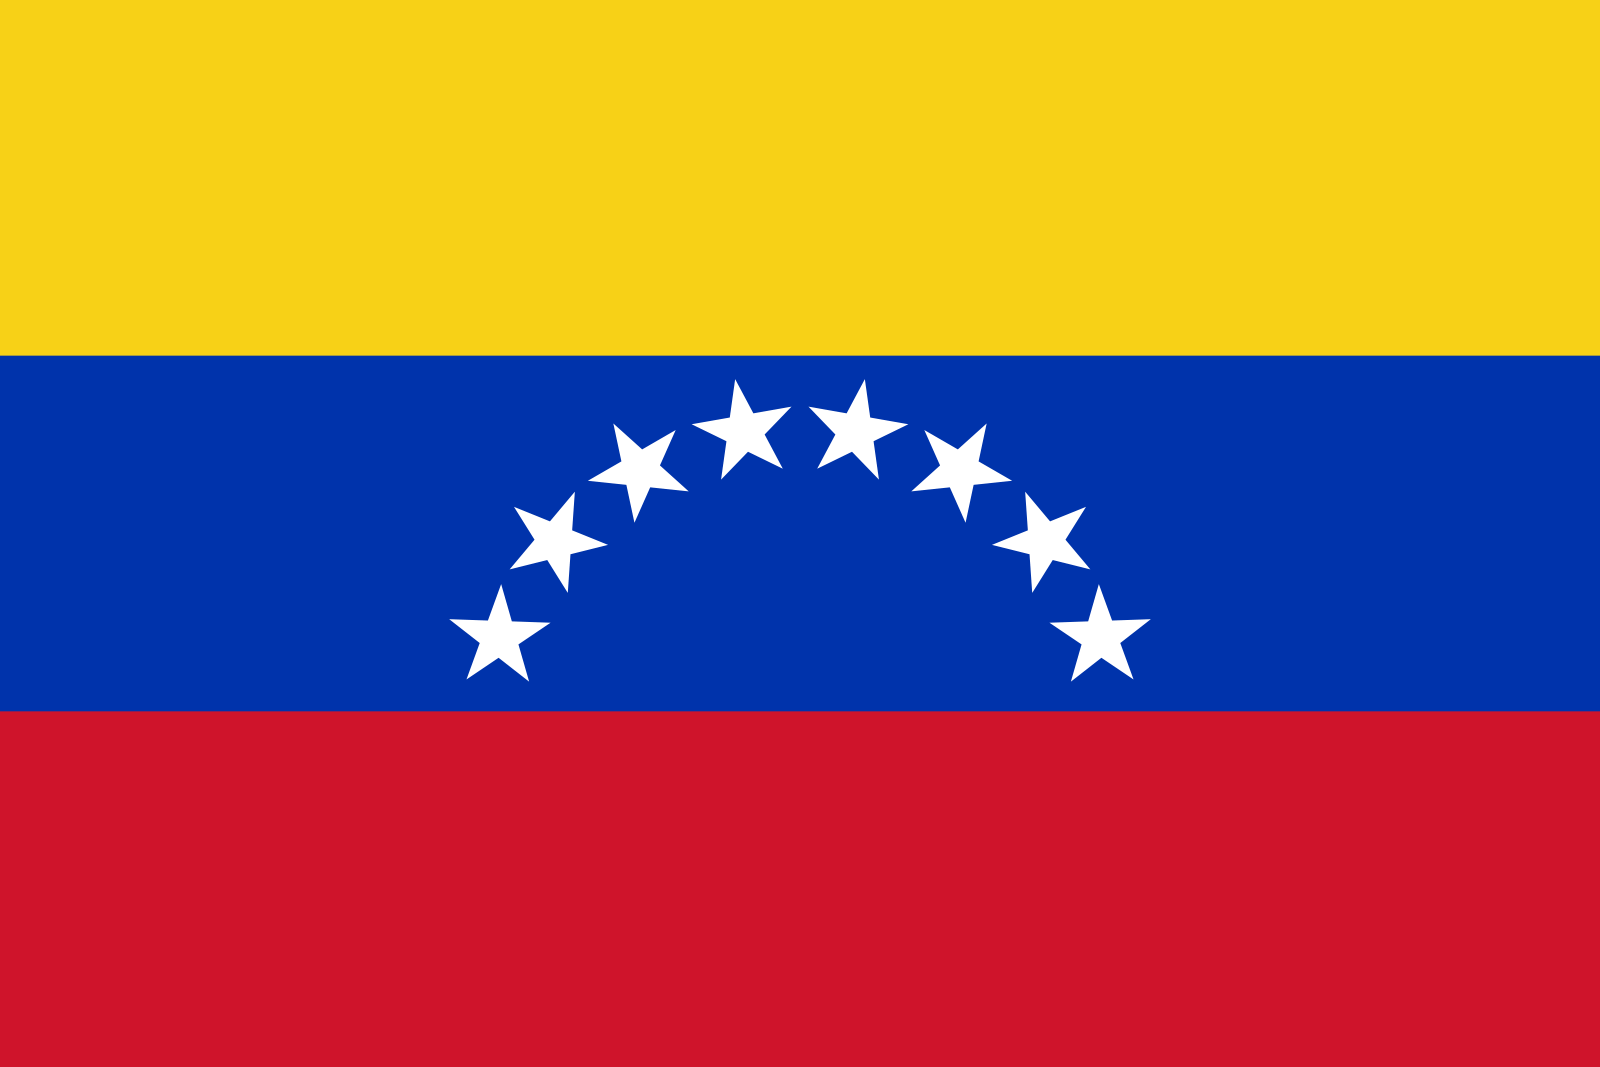 Venezuela: Liste der Ereignisse